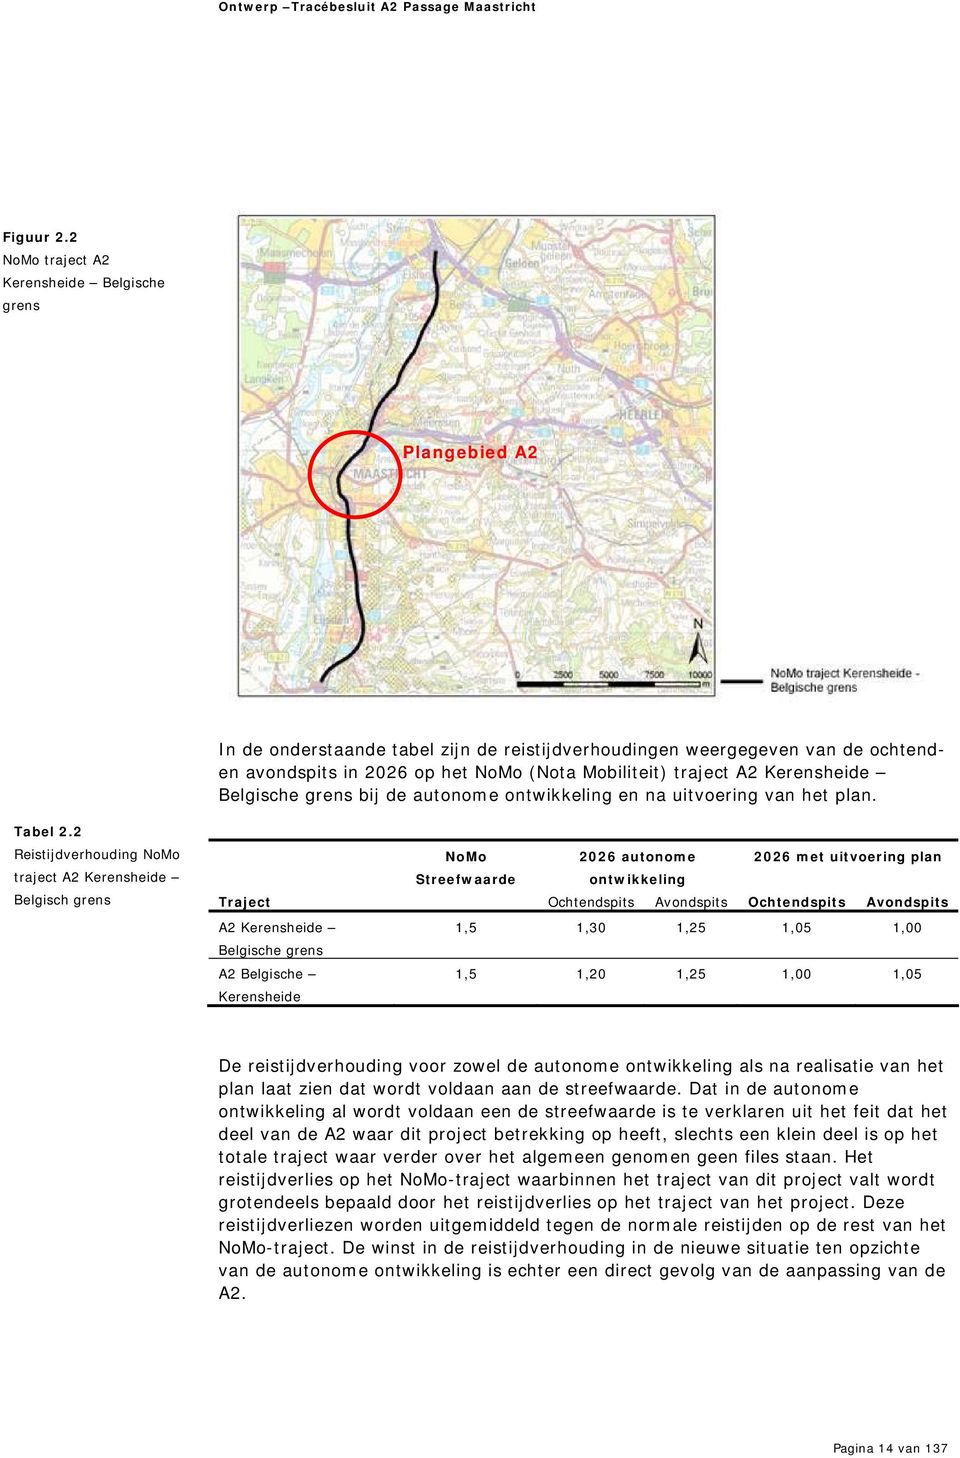 A2 Kerensheide Belgische grens bij de autonome ontwikkeling en na uitvoering van het plan. Tabel 2.